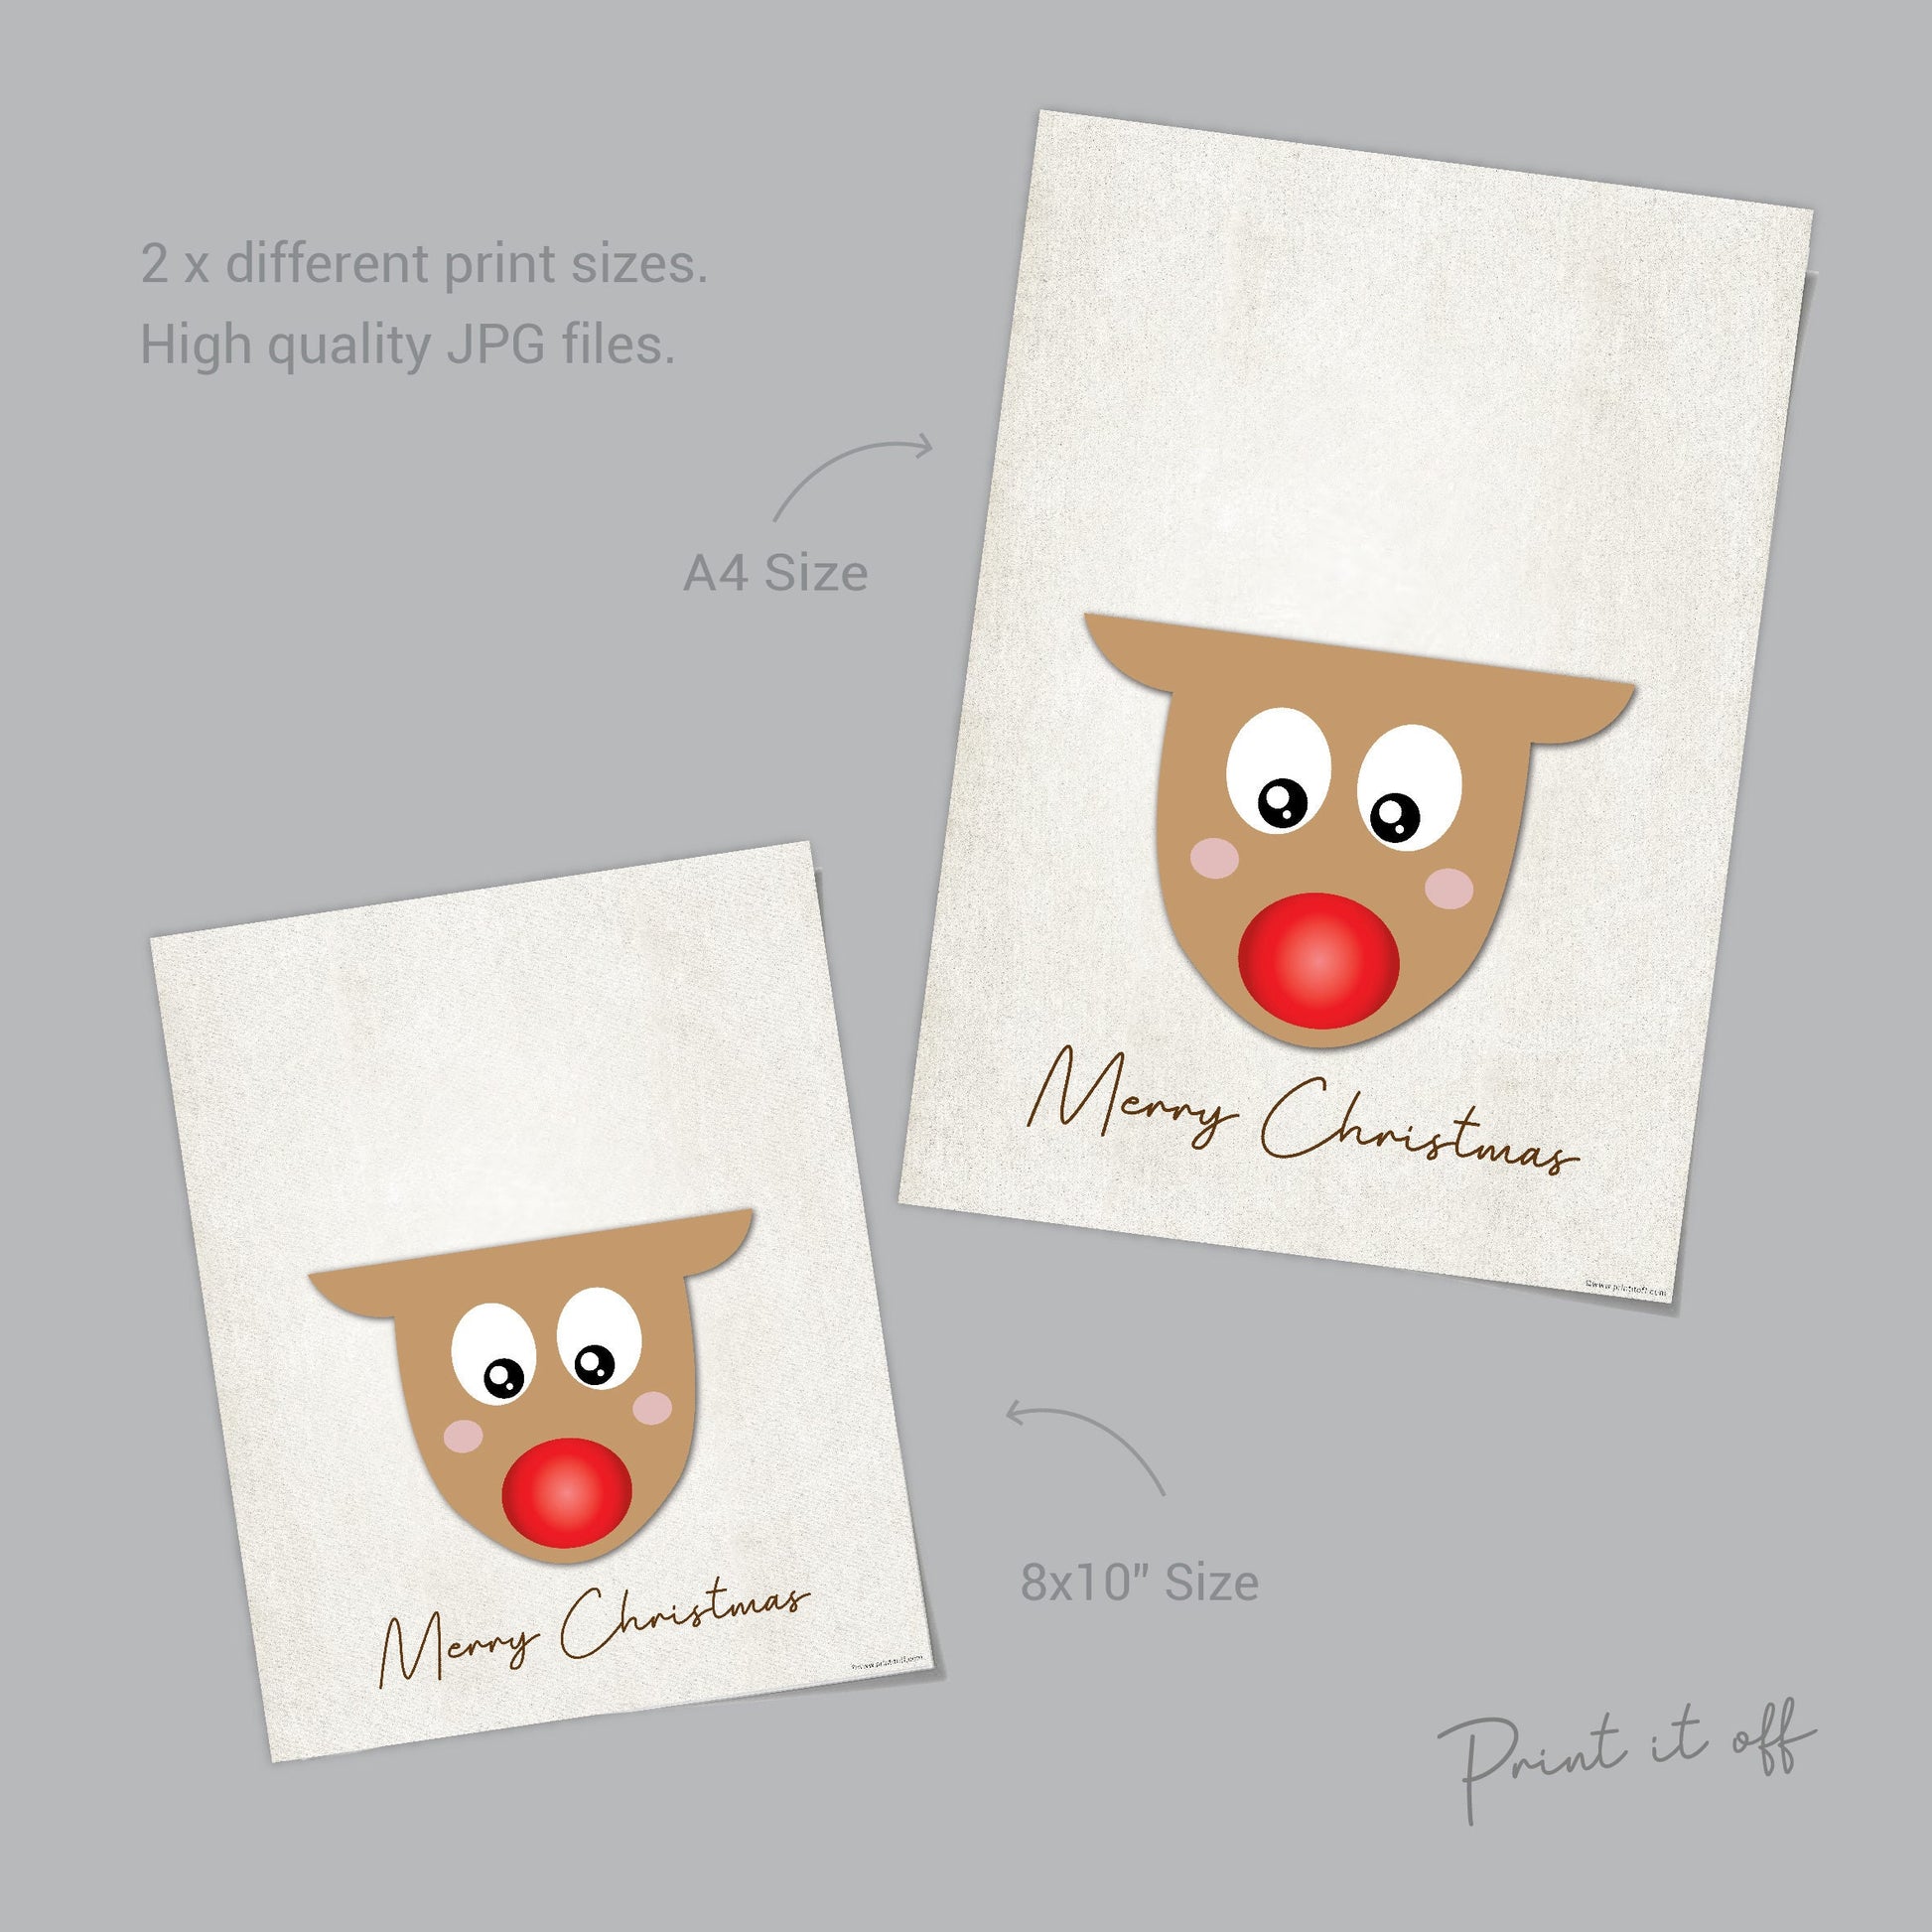 christmas handprint art reindeer